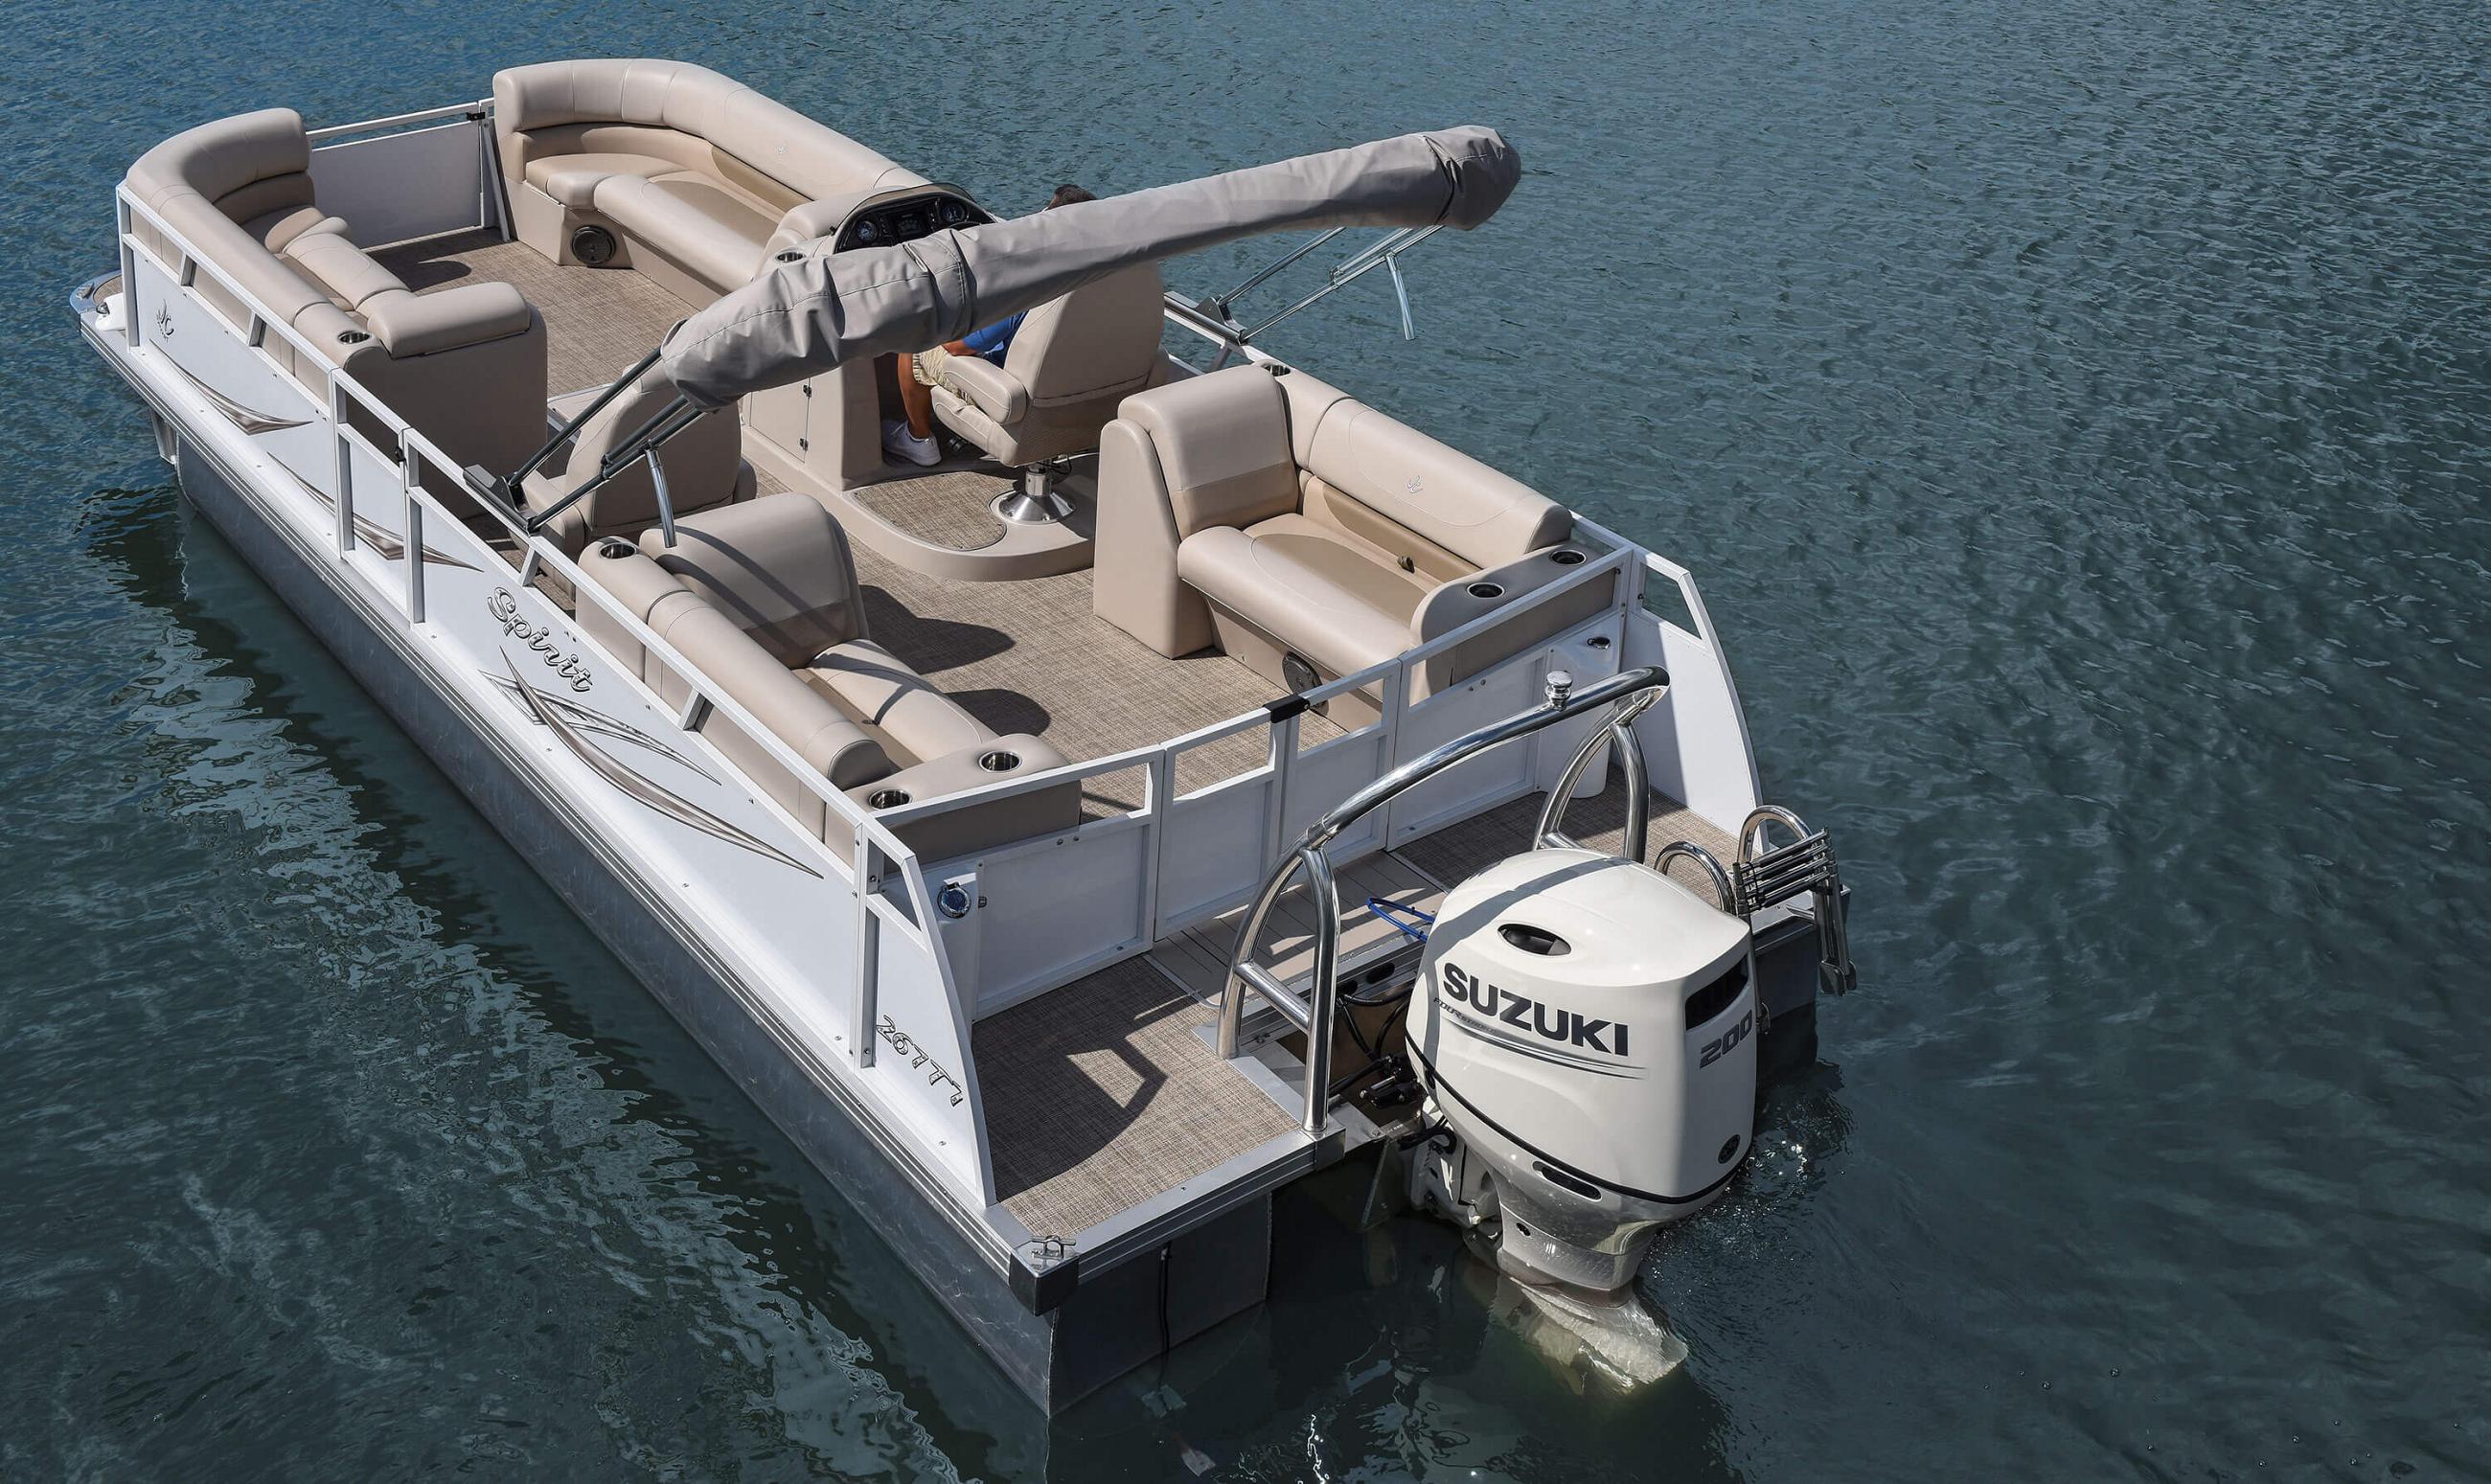 2018 JC TriToon Marine Spirit 267TT Sport Pontoon Boat Floorplan